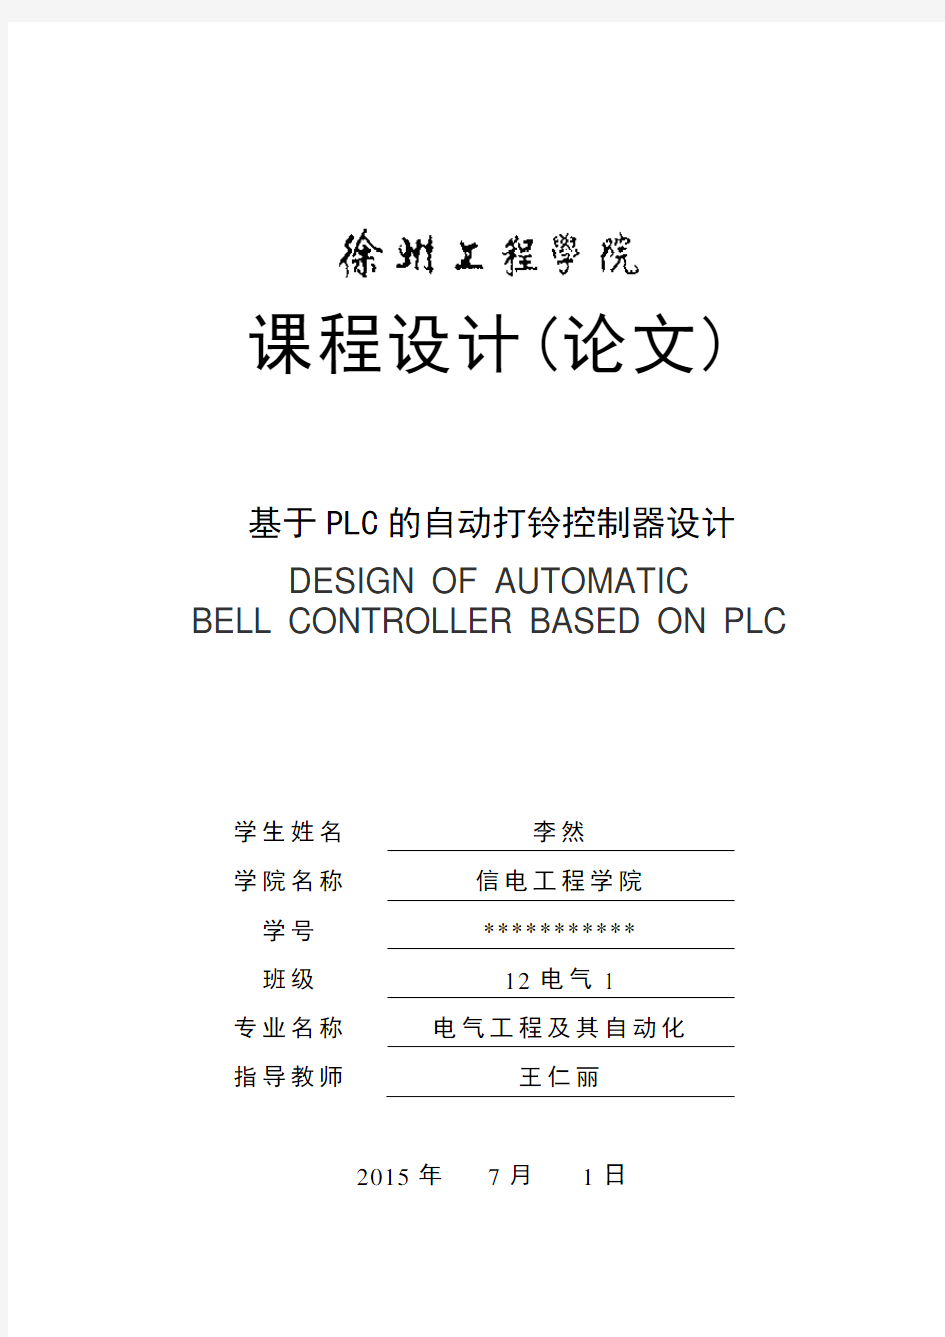 基于PLC的自动打铃控制器设计